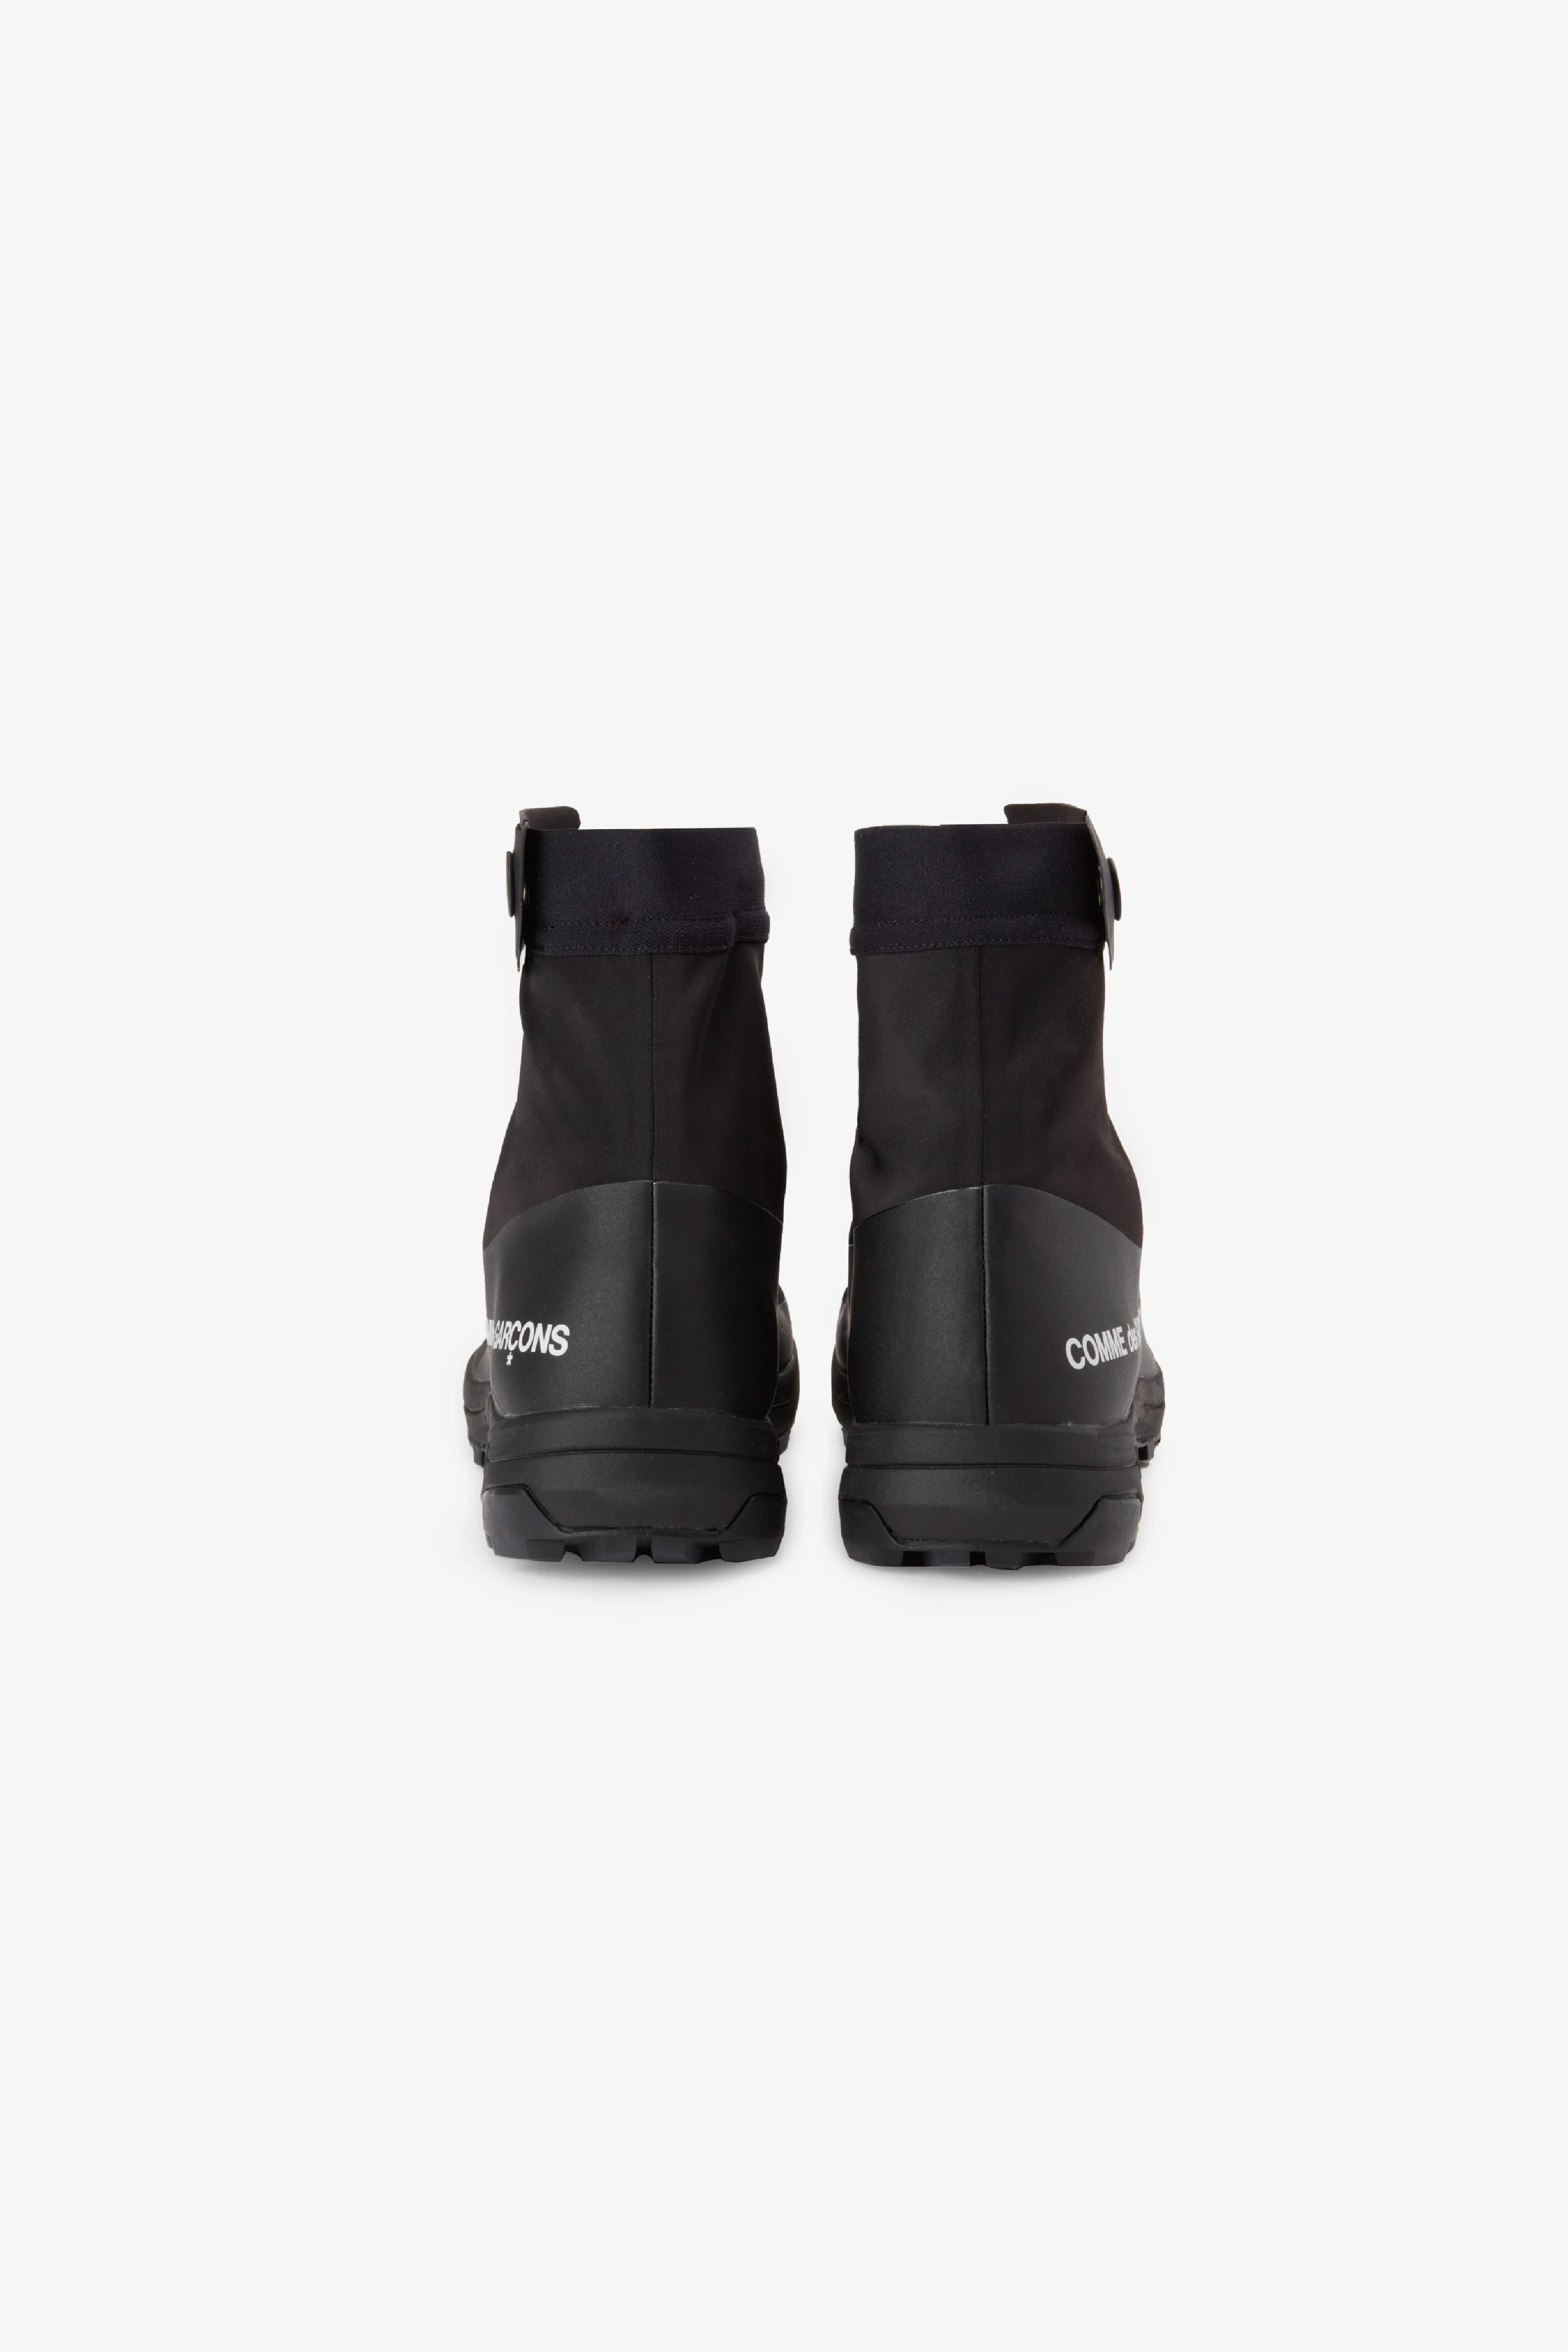 Selectshop FRAME - COMME DES GARÇONS Comme des Garçons x Salomon XA-Alpine 2 Footwear Dubai